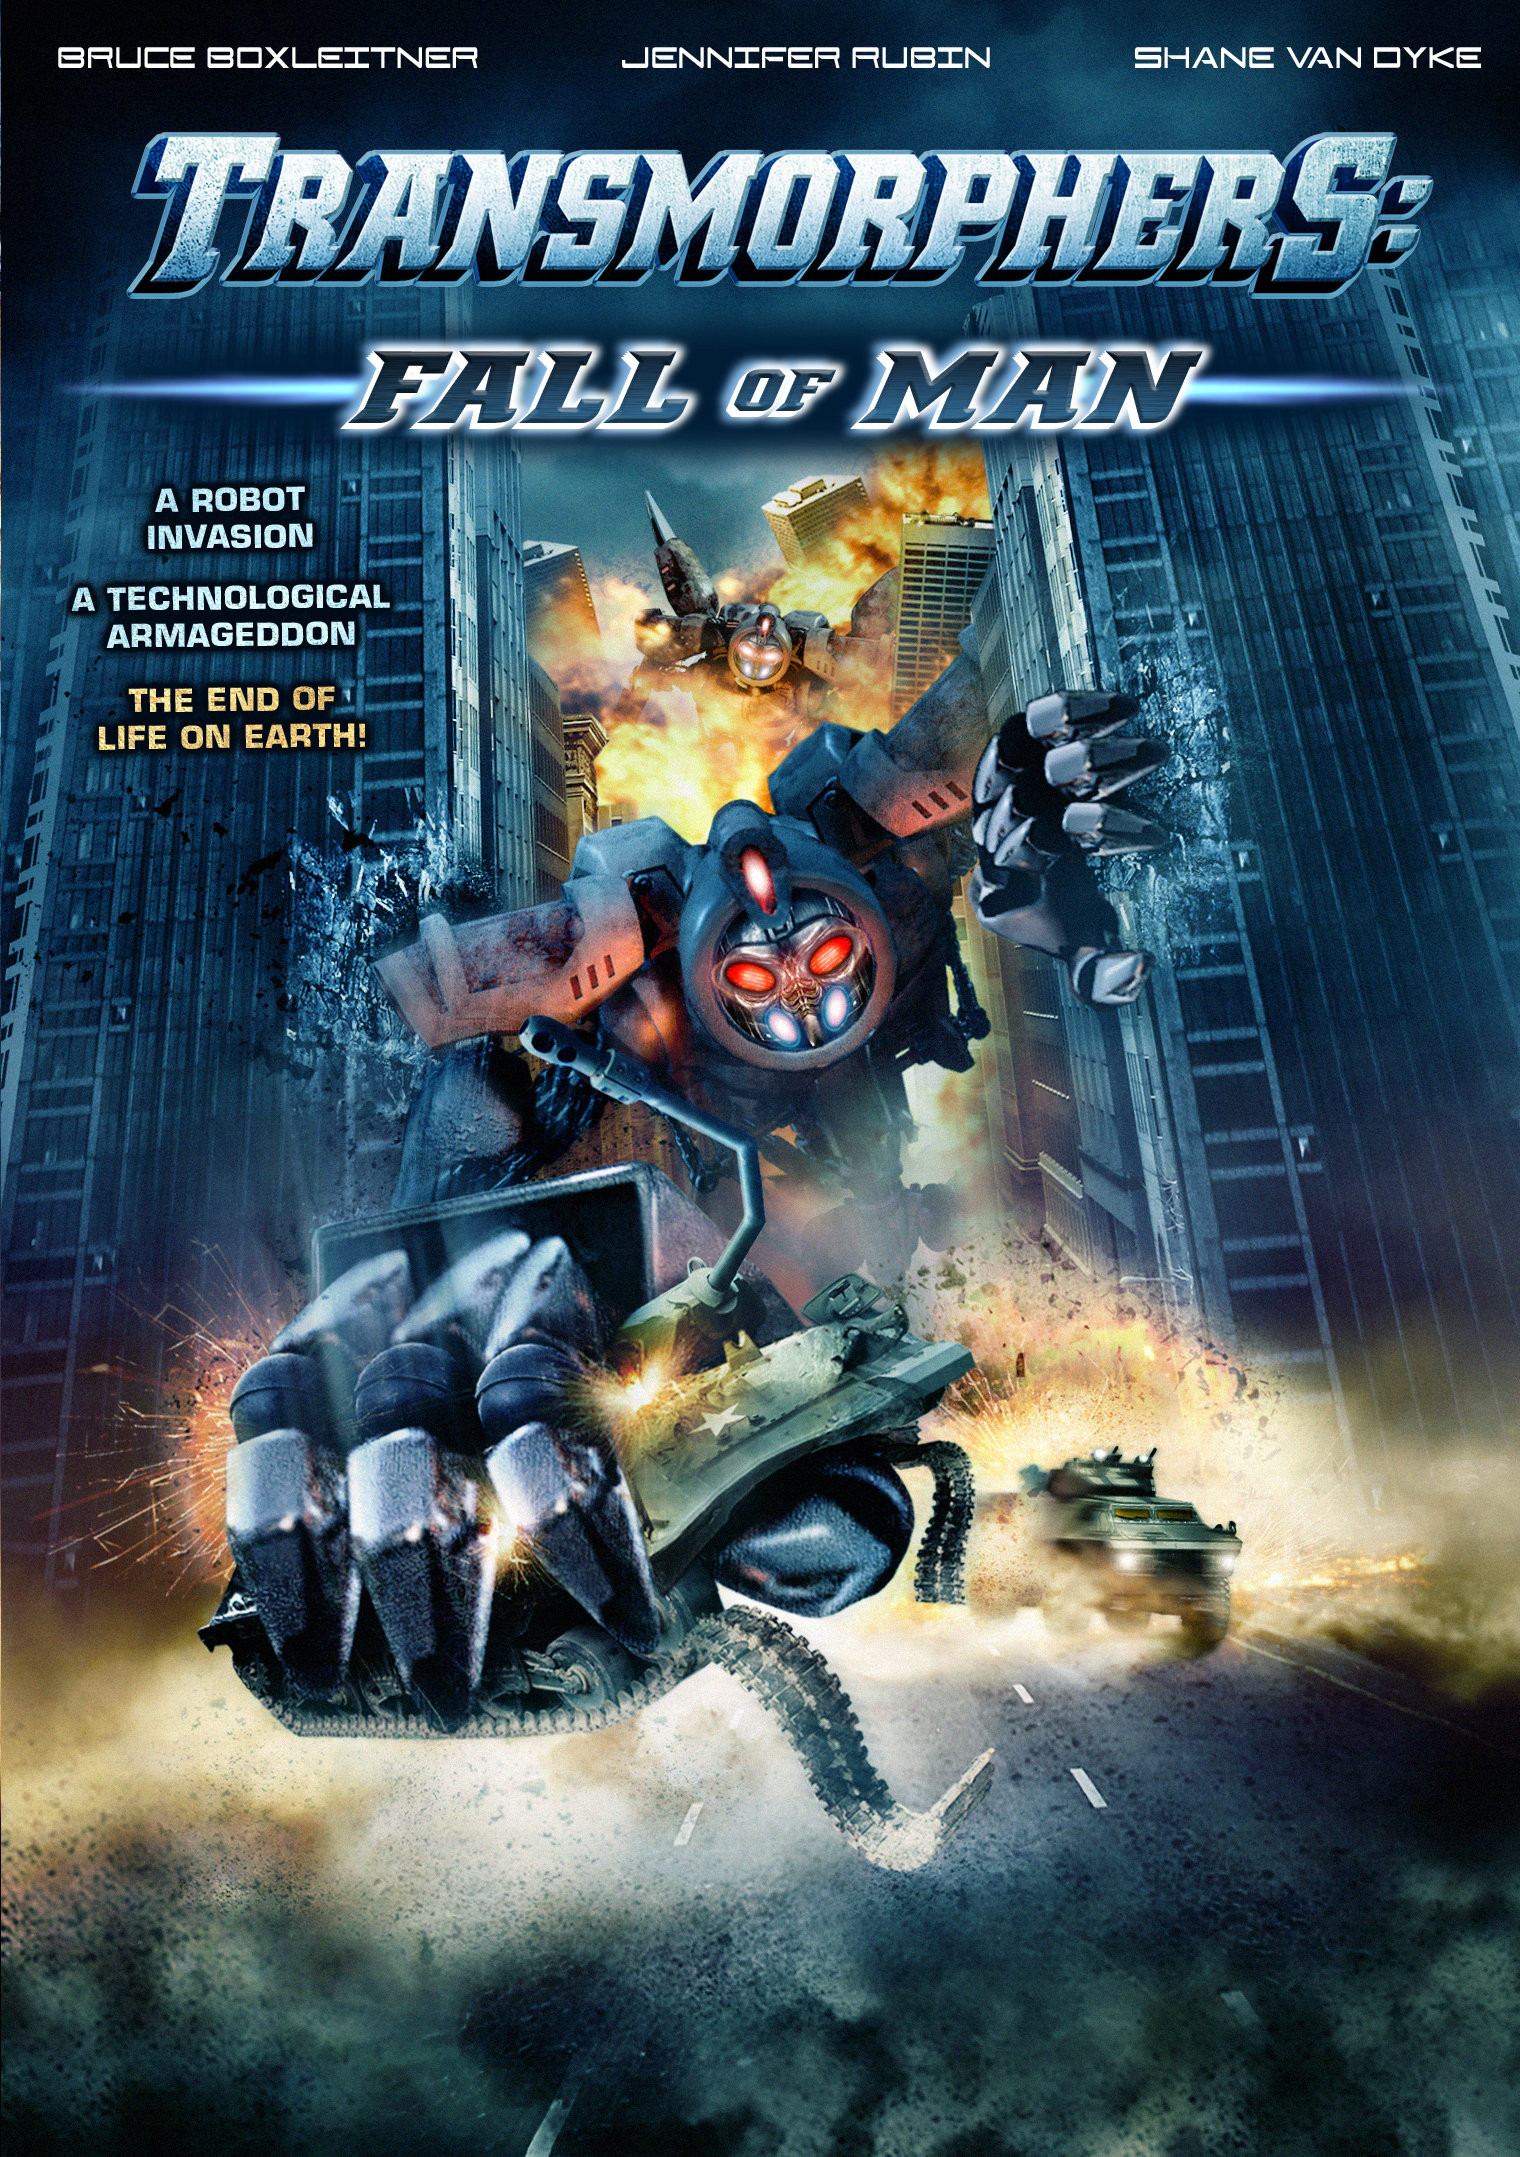 Transmorphers: Fall of Man (2009) starring Bruce Boxleitner on DVD on DVD